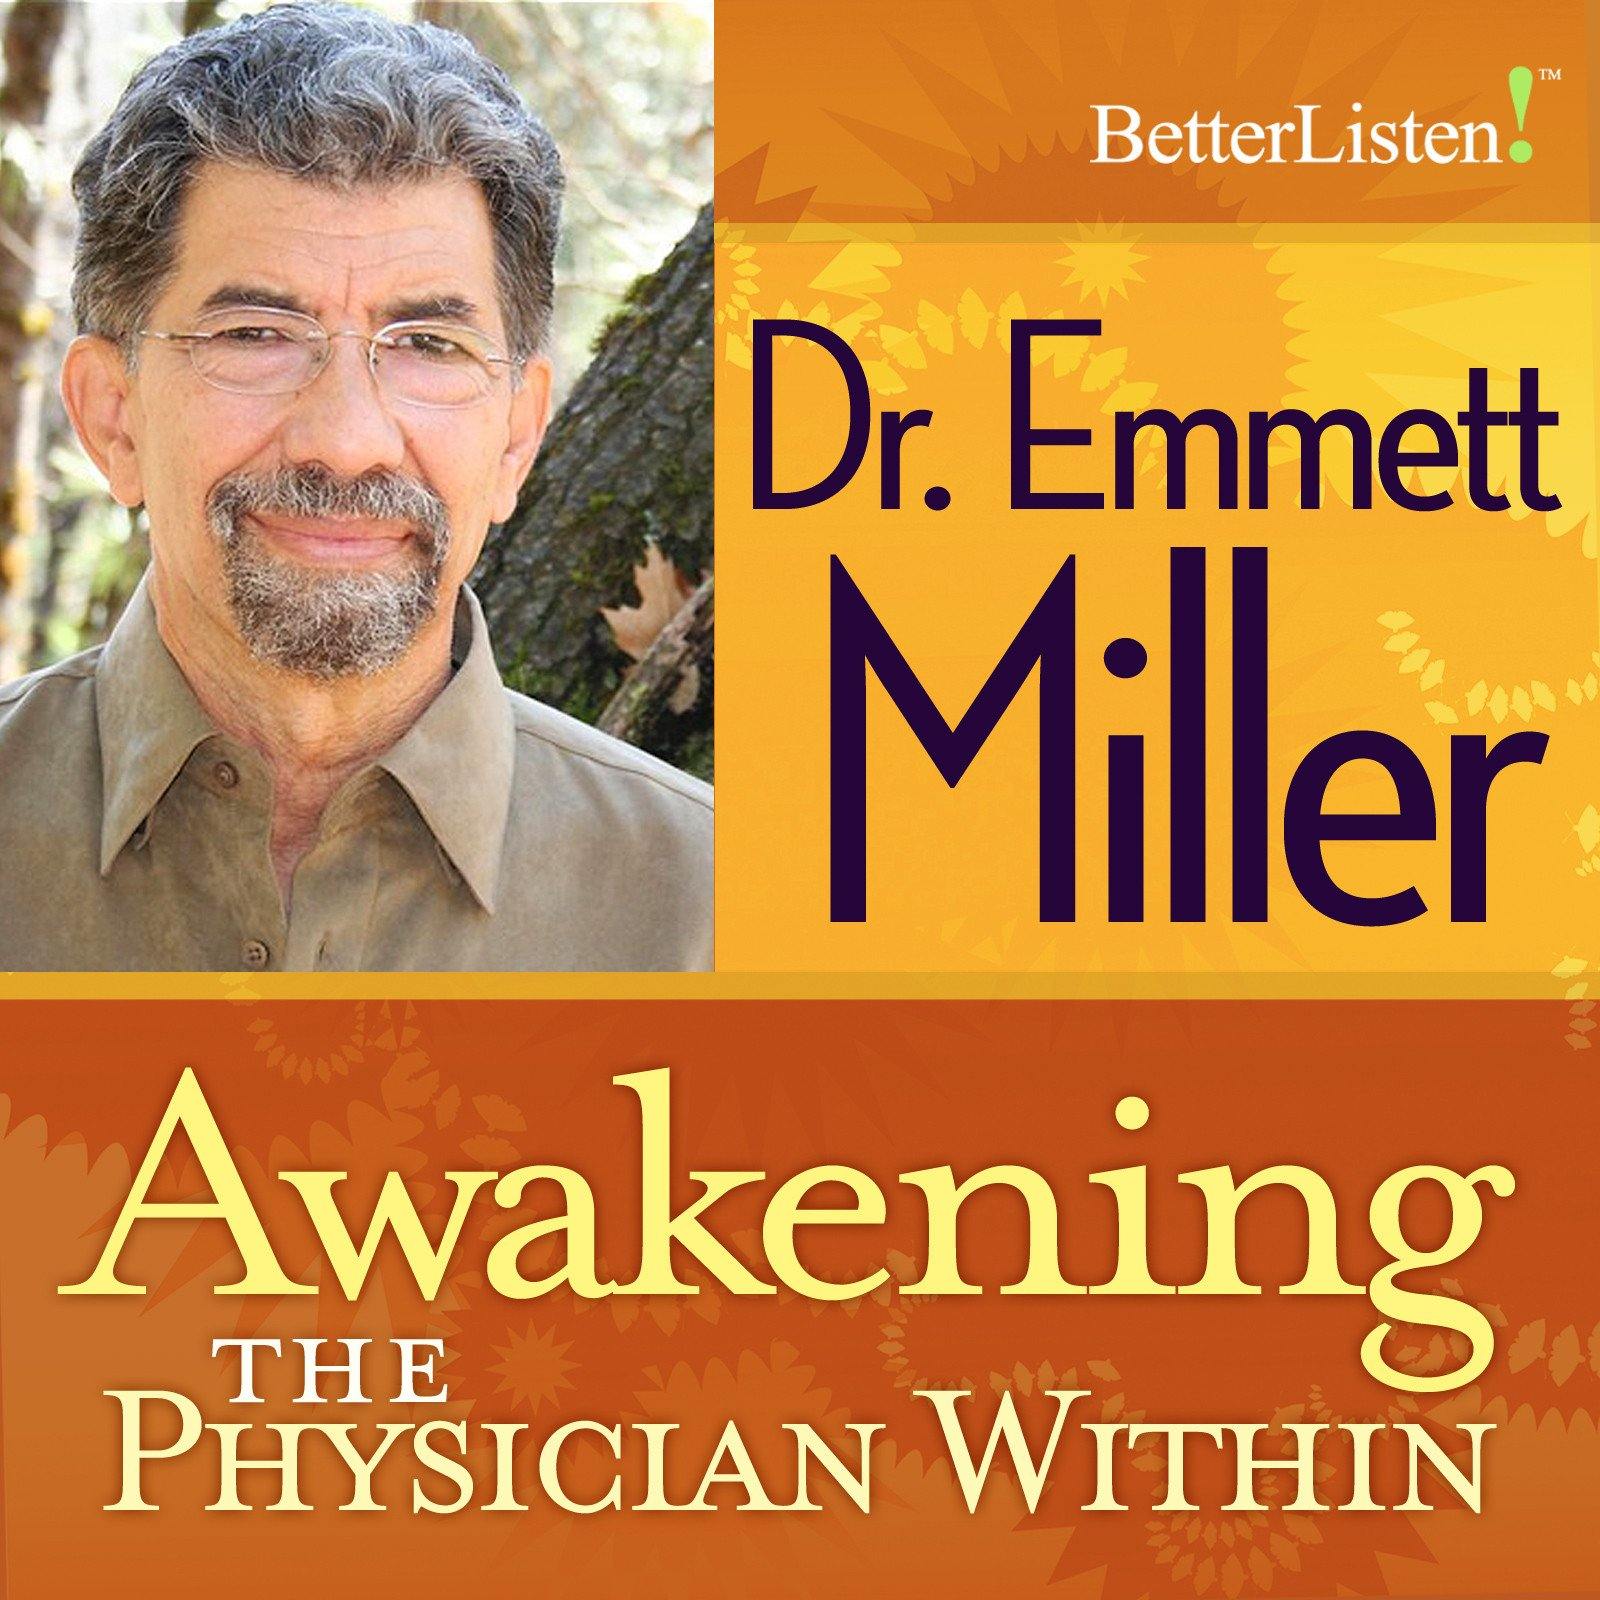 Awakening the Physician Within by Dr. Emmett Miller Audio Program Dr. Emmett Miller - BetterListen!